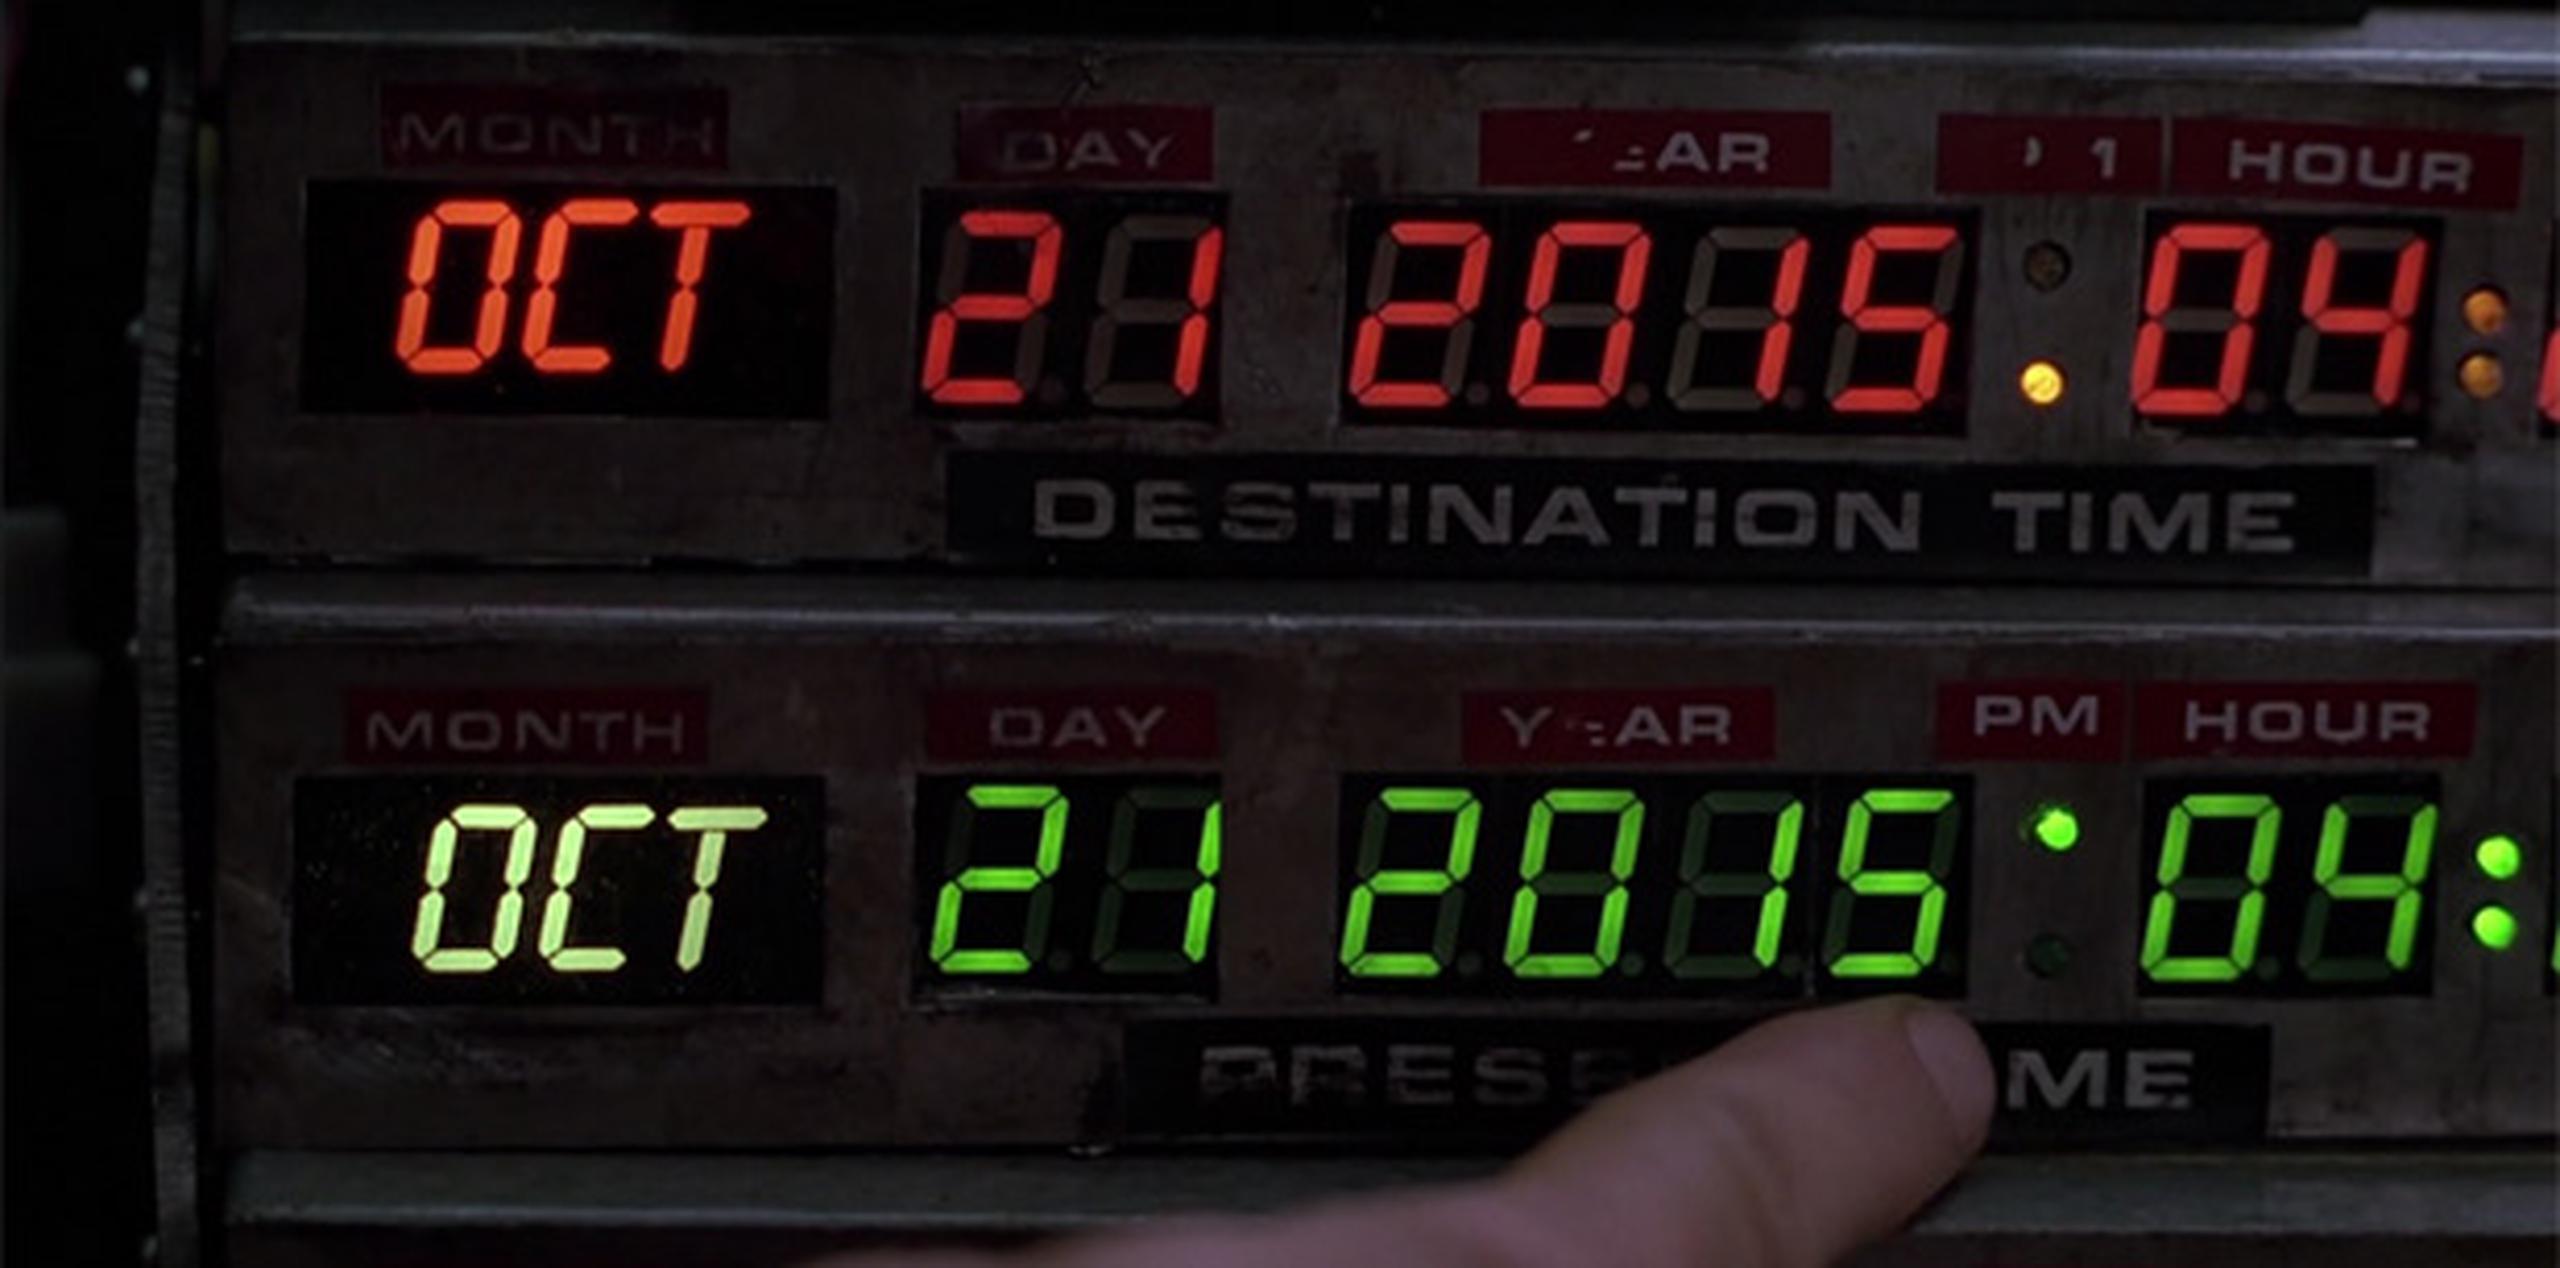 El personaje de "Marty McFly" viajó del 1985 al día de hoy en el filme "Back to the Future Part II".